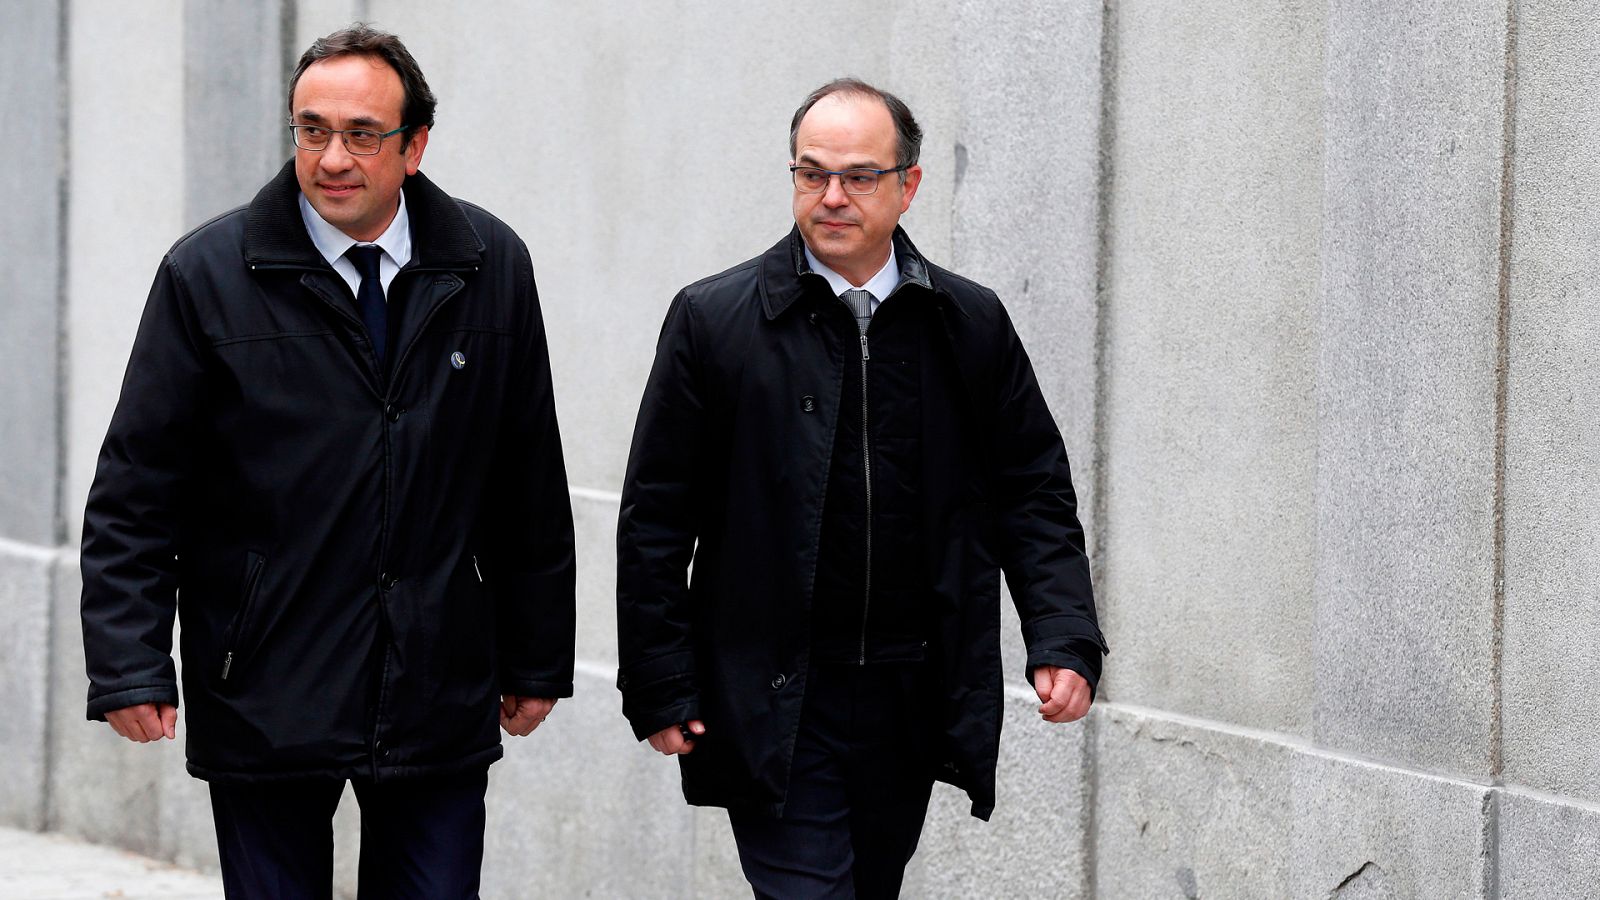 Josep Rull y Jordi Turull, llegando al Tribunal Supremo en una imagen del 23 de marzo